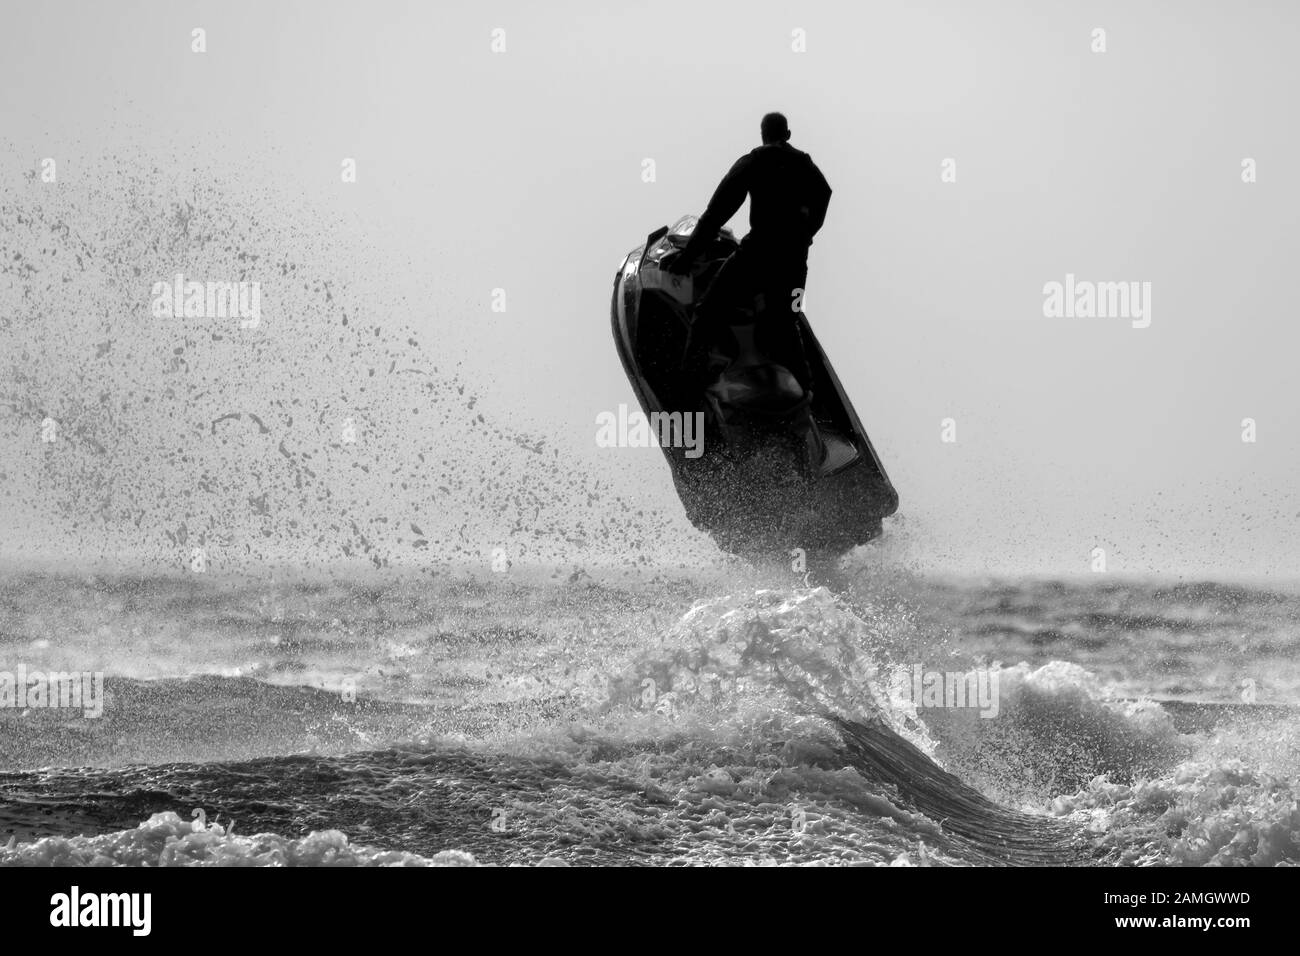 Dramatische, monochrome Action-Aufnahme von isolierten Mann auf Jet-Ski-Bike im Meer, in Silhouette, fliegen hoch in der Luft, Meeresspray, Wellen unten. Stockfoto